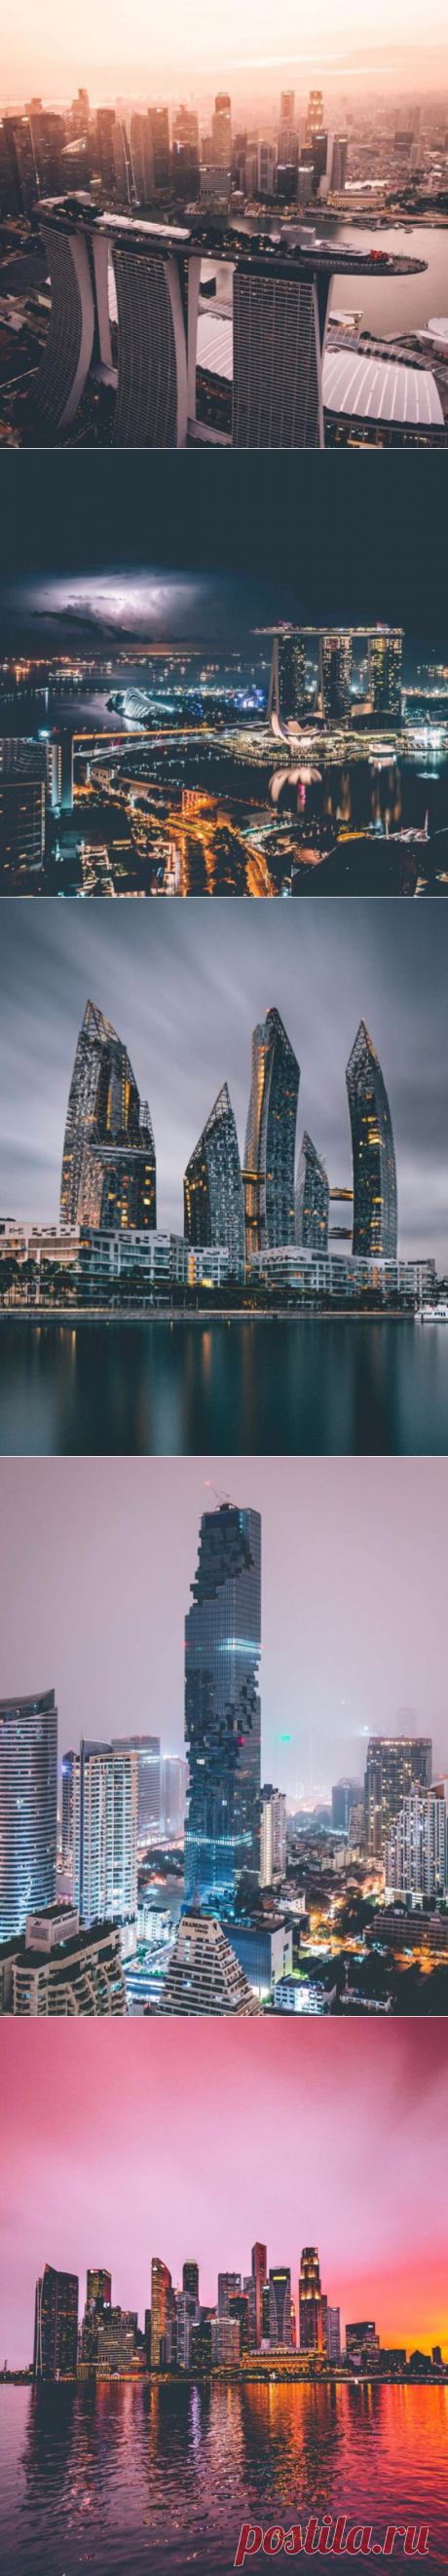 Фото крупных городов Азии